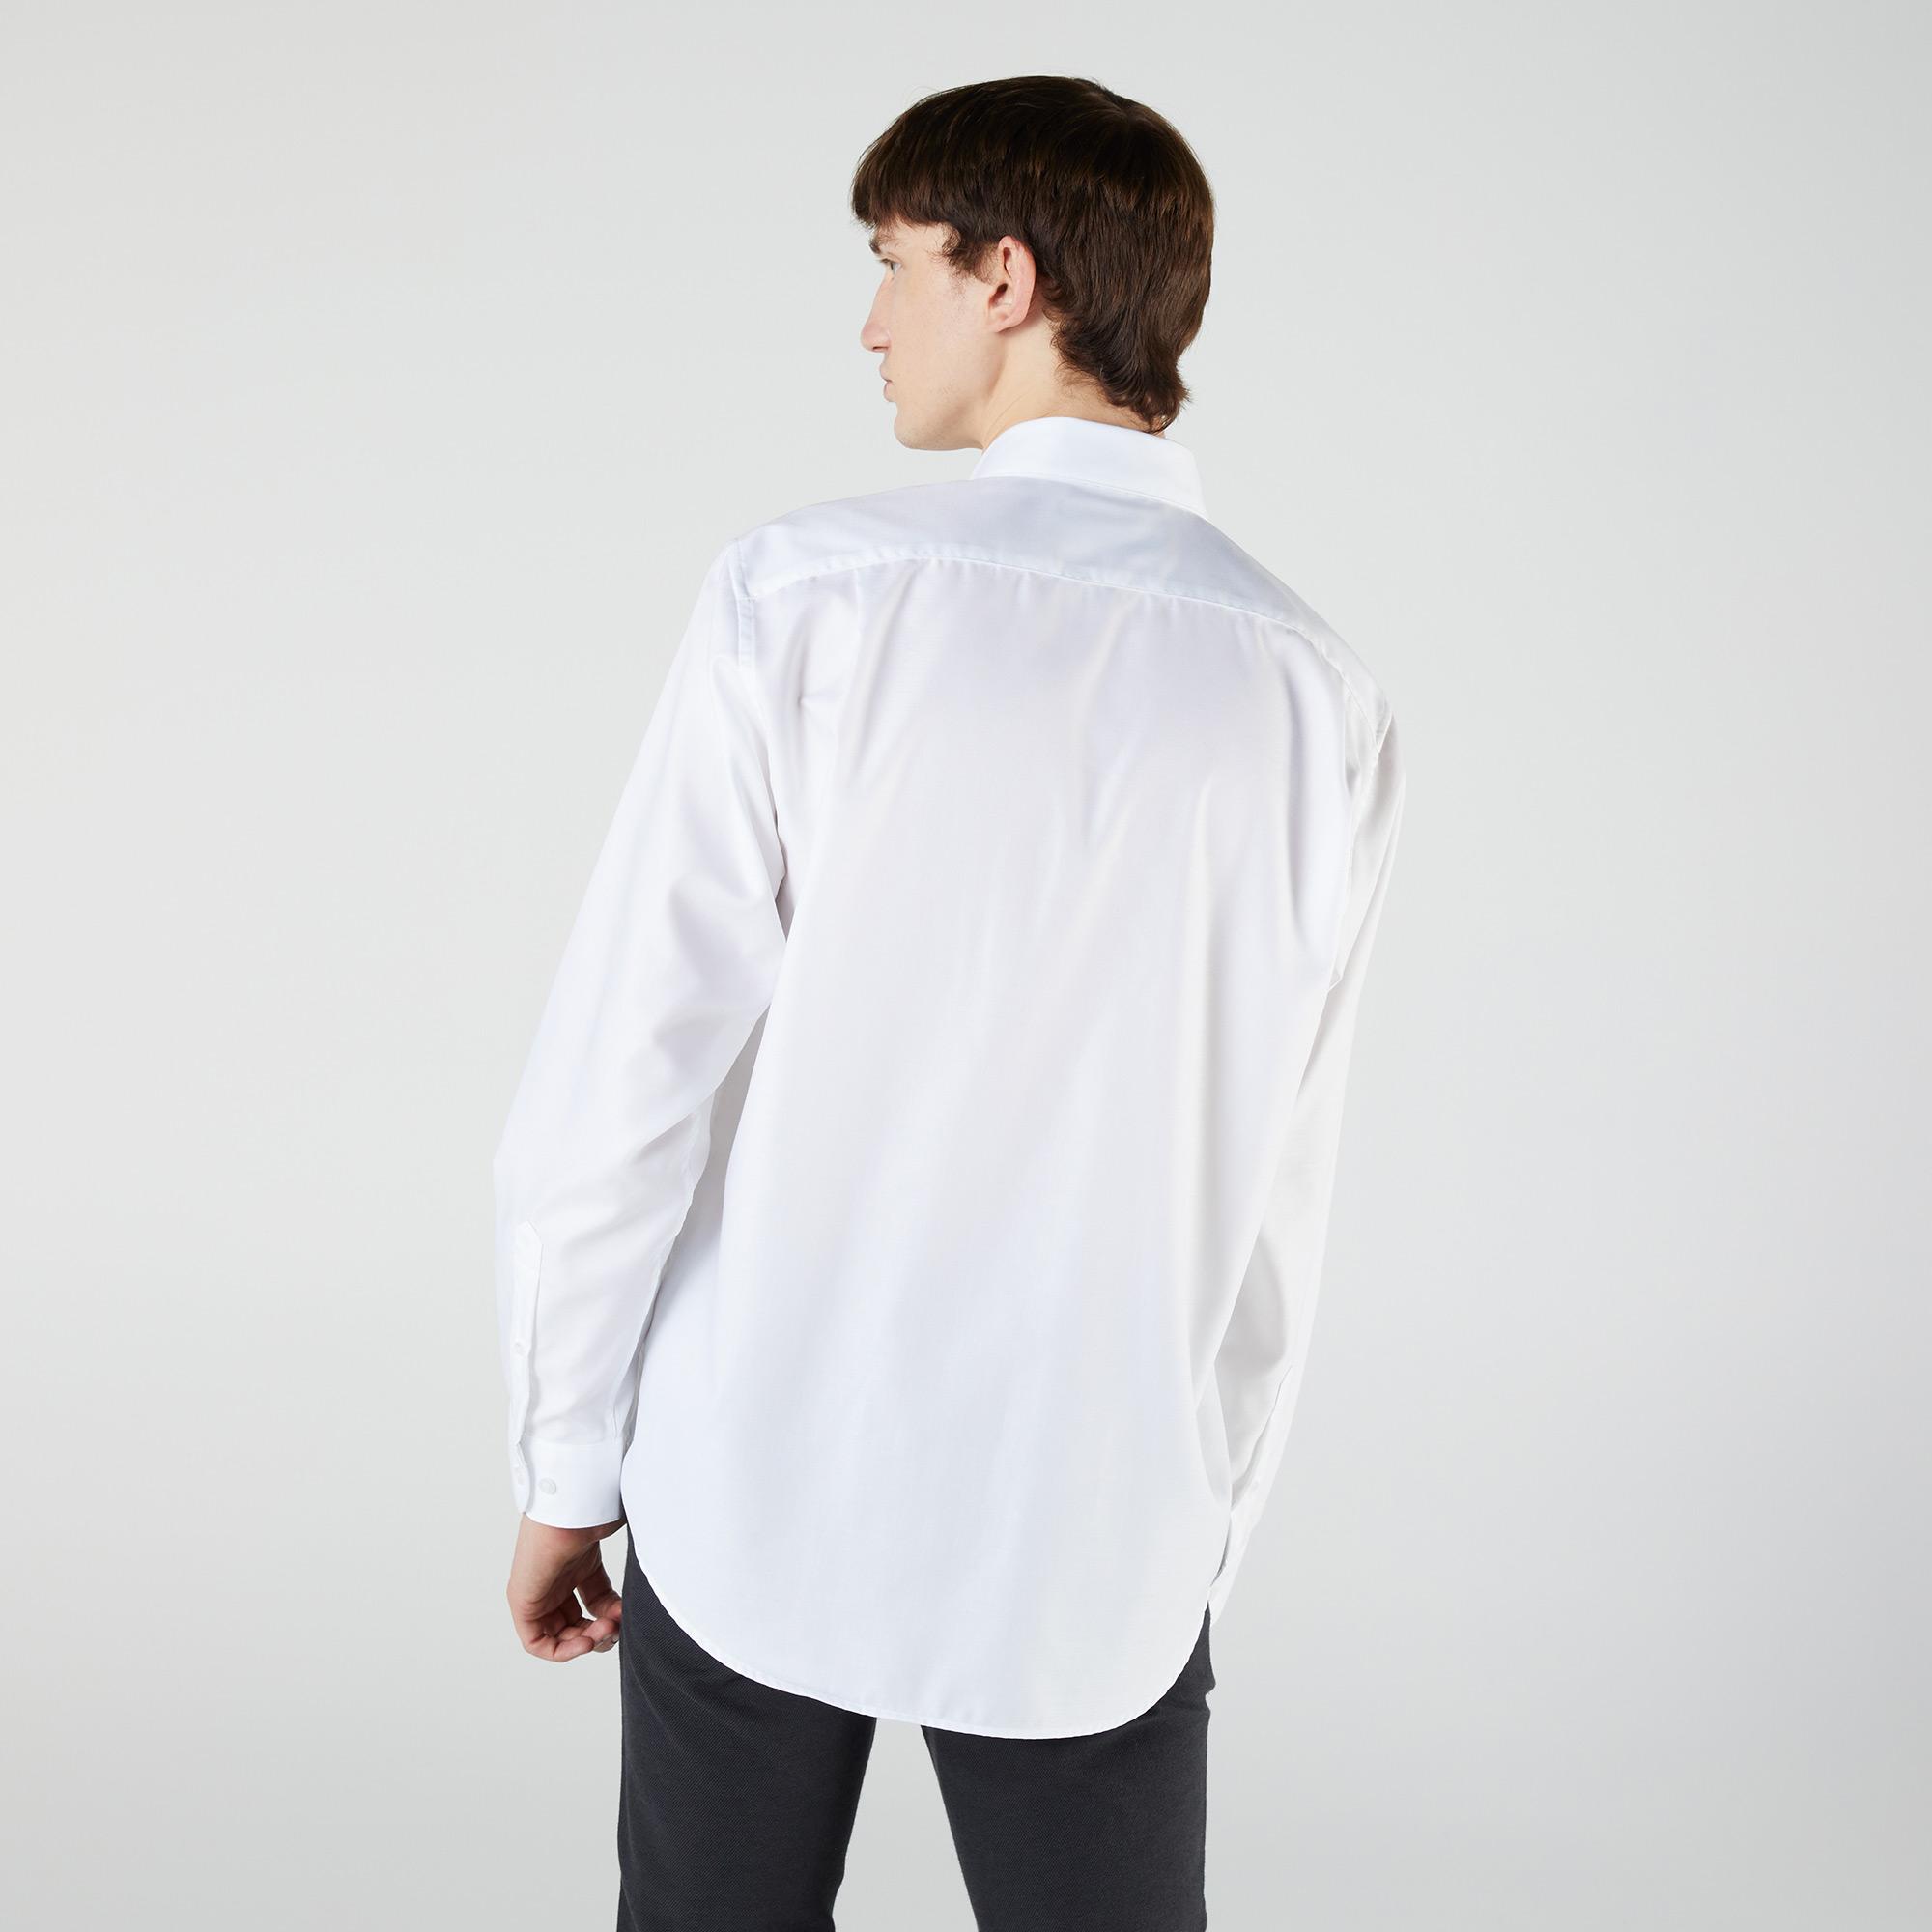 Lacoste Men's Regular Fit Cotton Mini Piqué Shirt